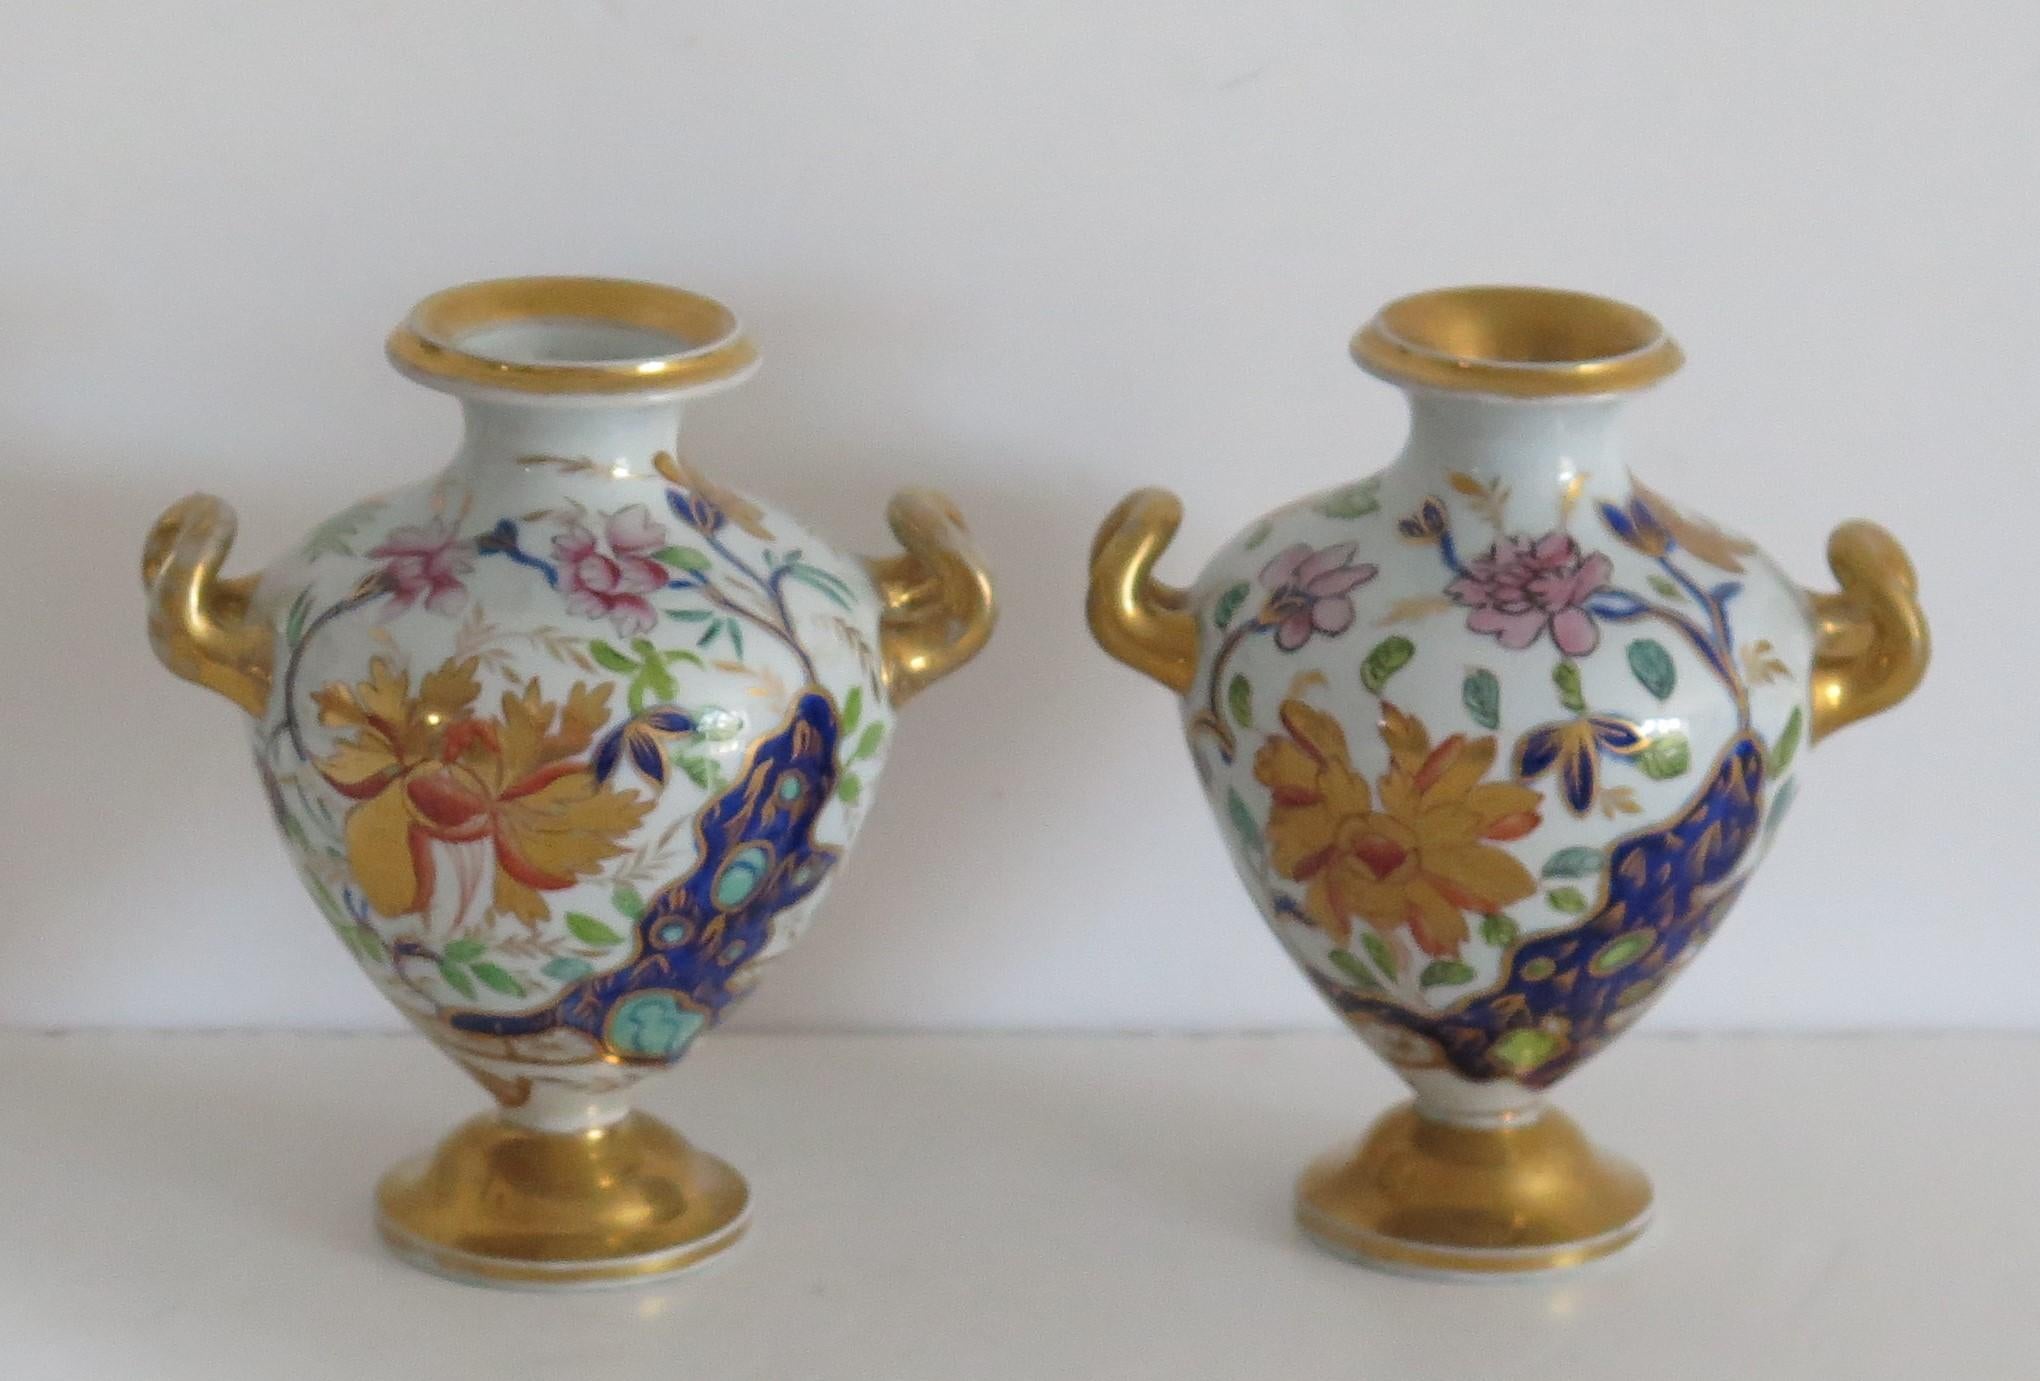 Il s'agit d'une paire rare de vases ou d'urnes miniatures en pierre de fer de Mason, peints à la main dans le magnifique motif 